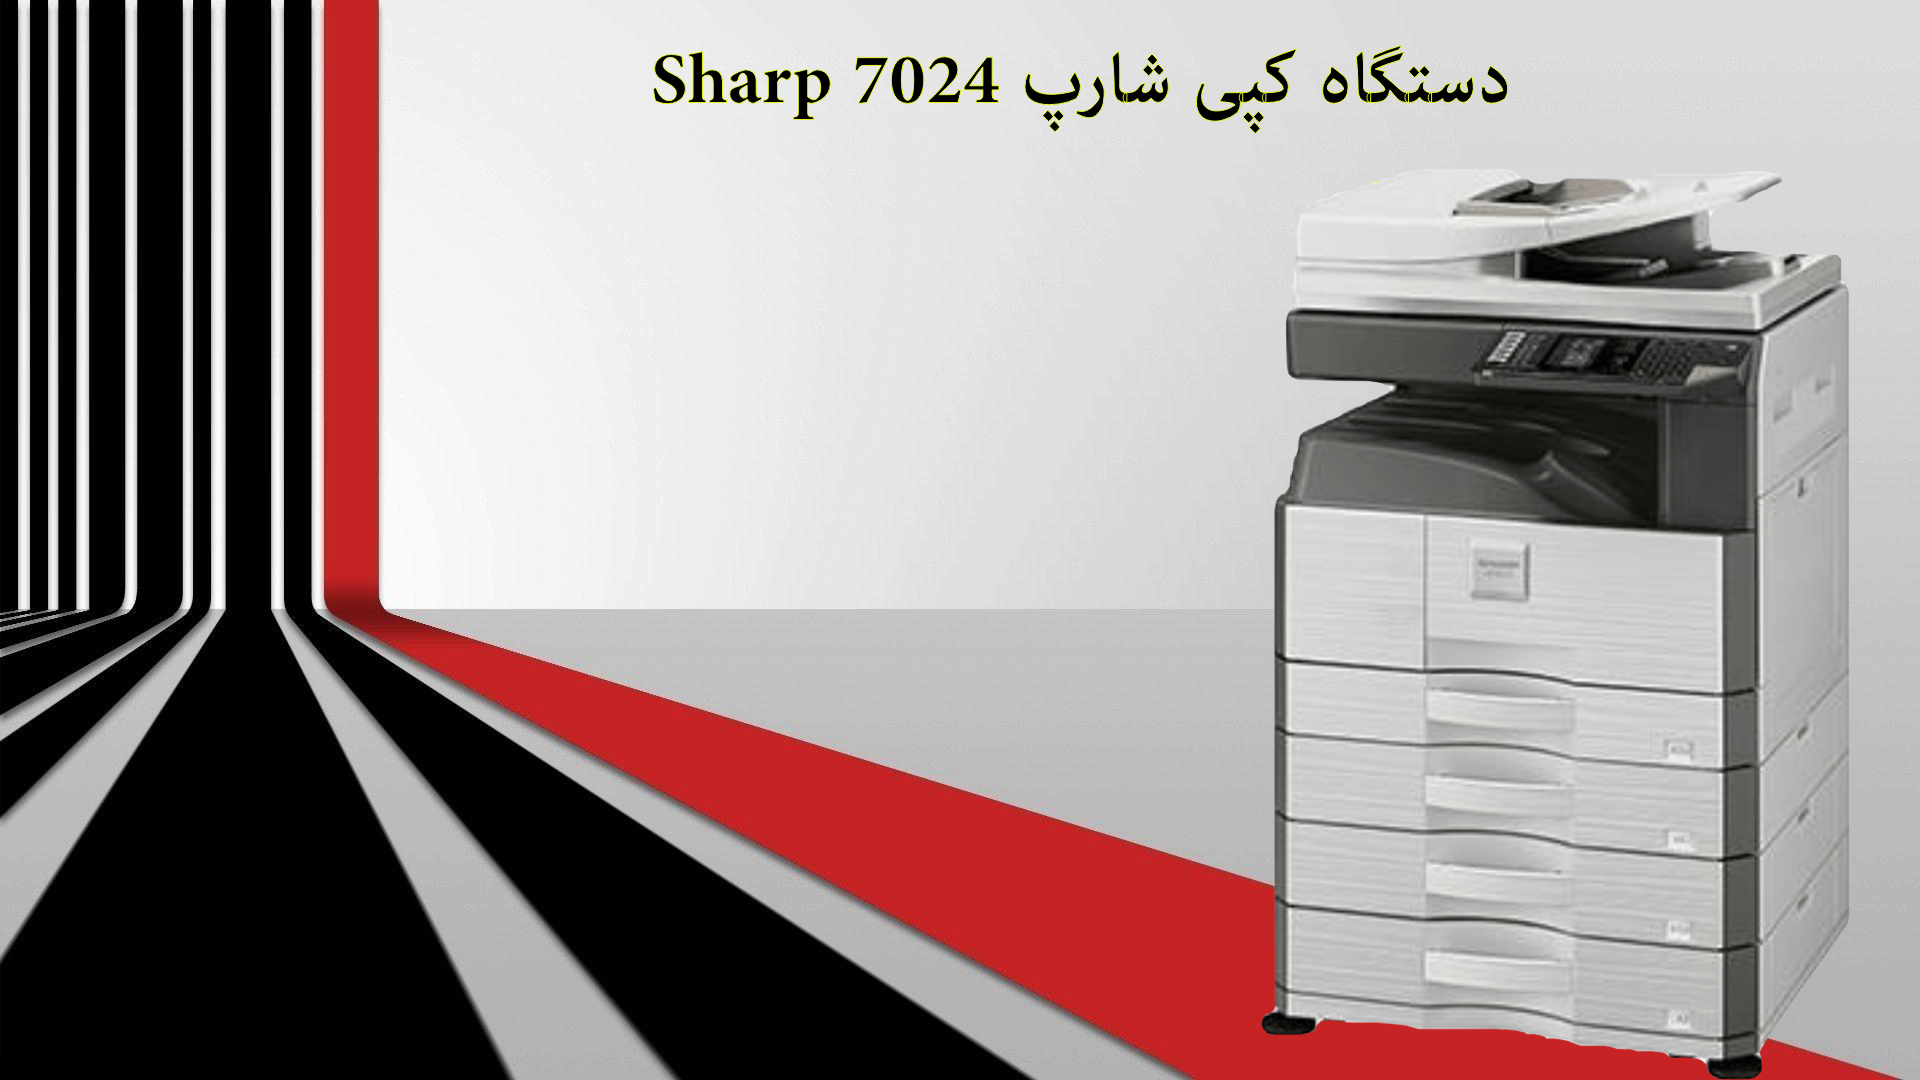 دستگاه کپی شارپ Sharp 7024